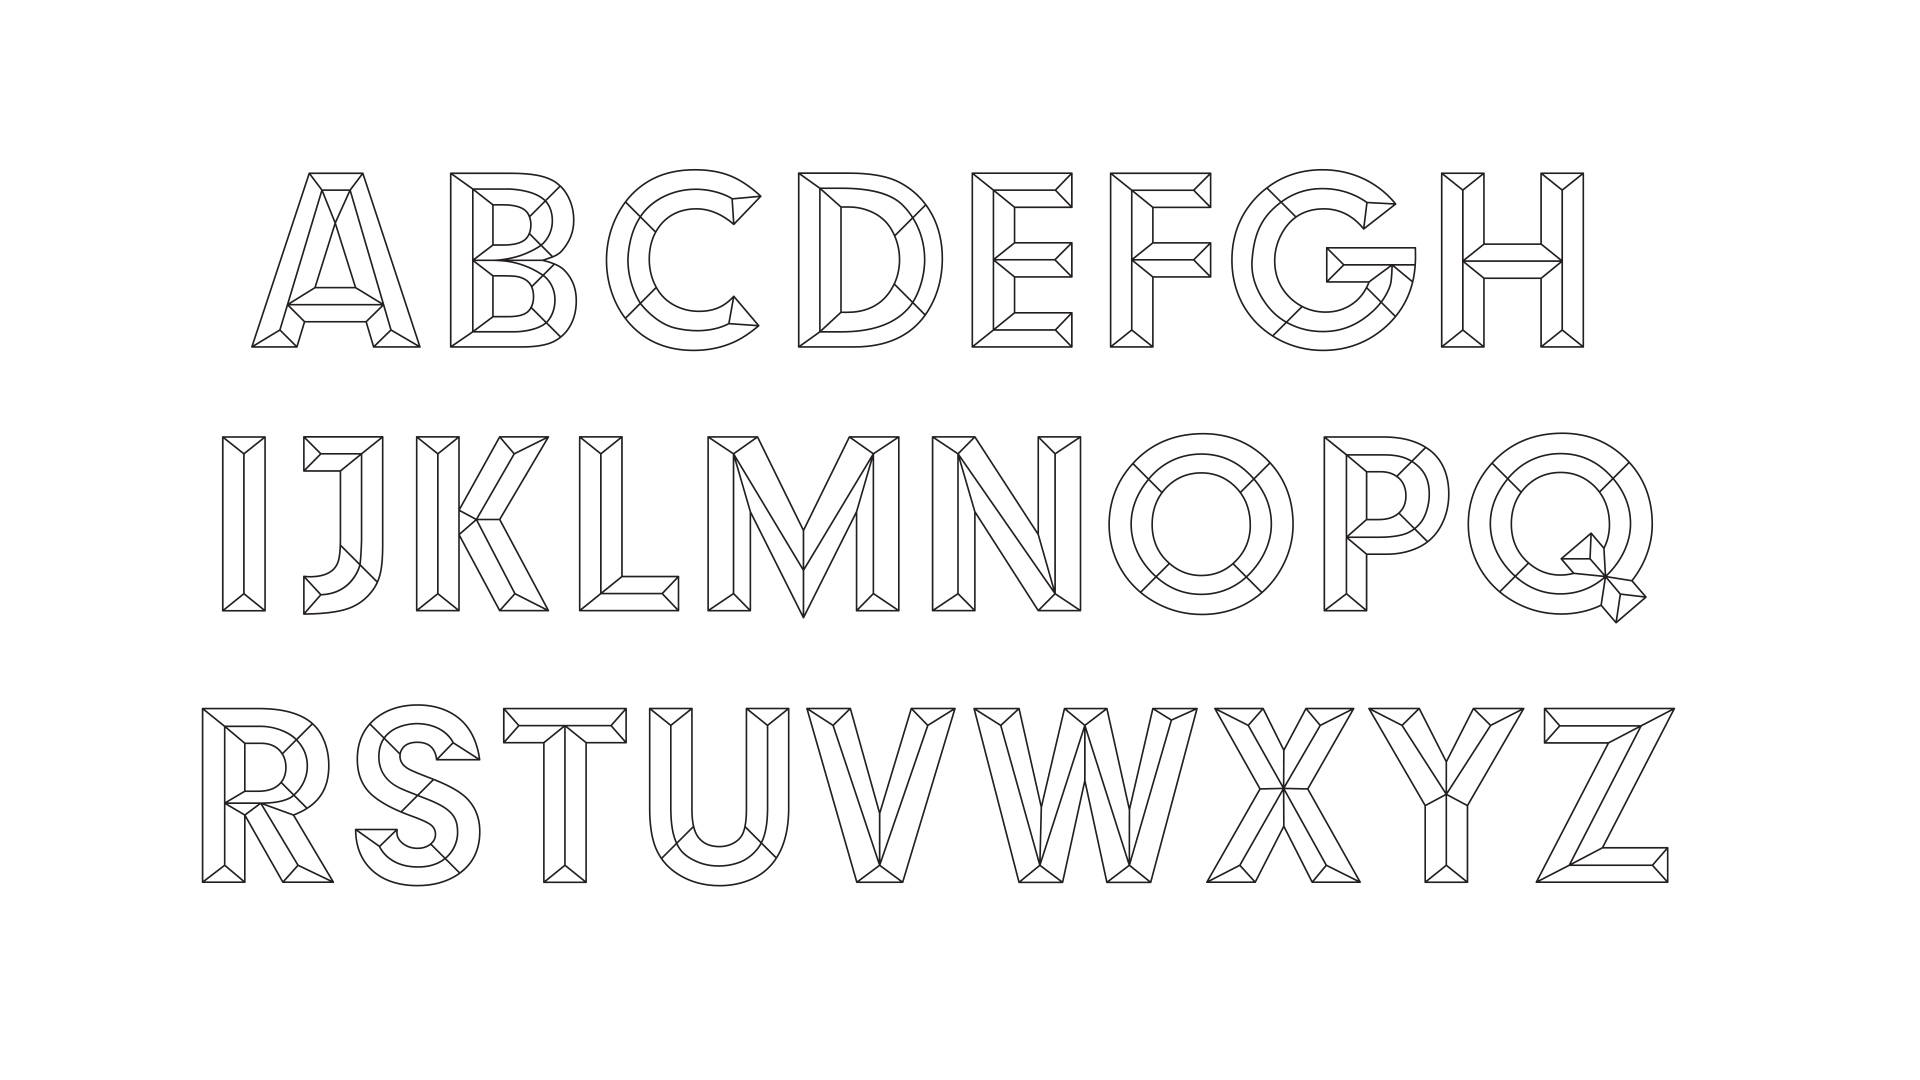 MarkArrowsmith-Indian-Typeface-Image-BW4